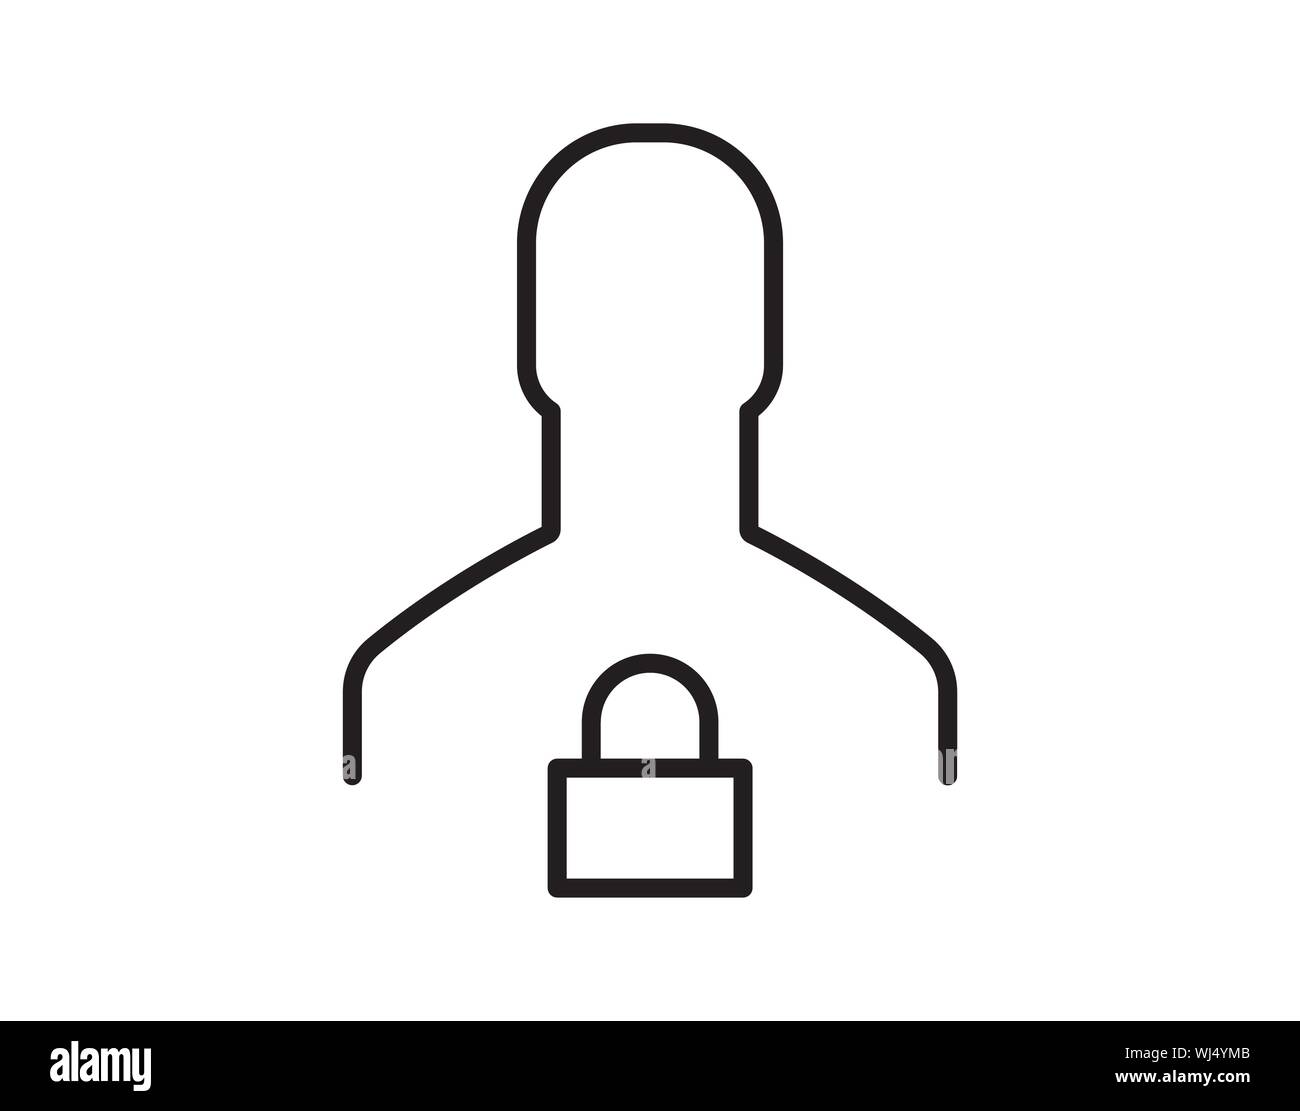 User Login authentifizieren oder Symbol, Vektor. Persönlicher Schutz Symbol. Internet Datenschutz Symbol. Kennwort geschützt. Security Key Pad. Konto. Stock Vektor